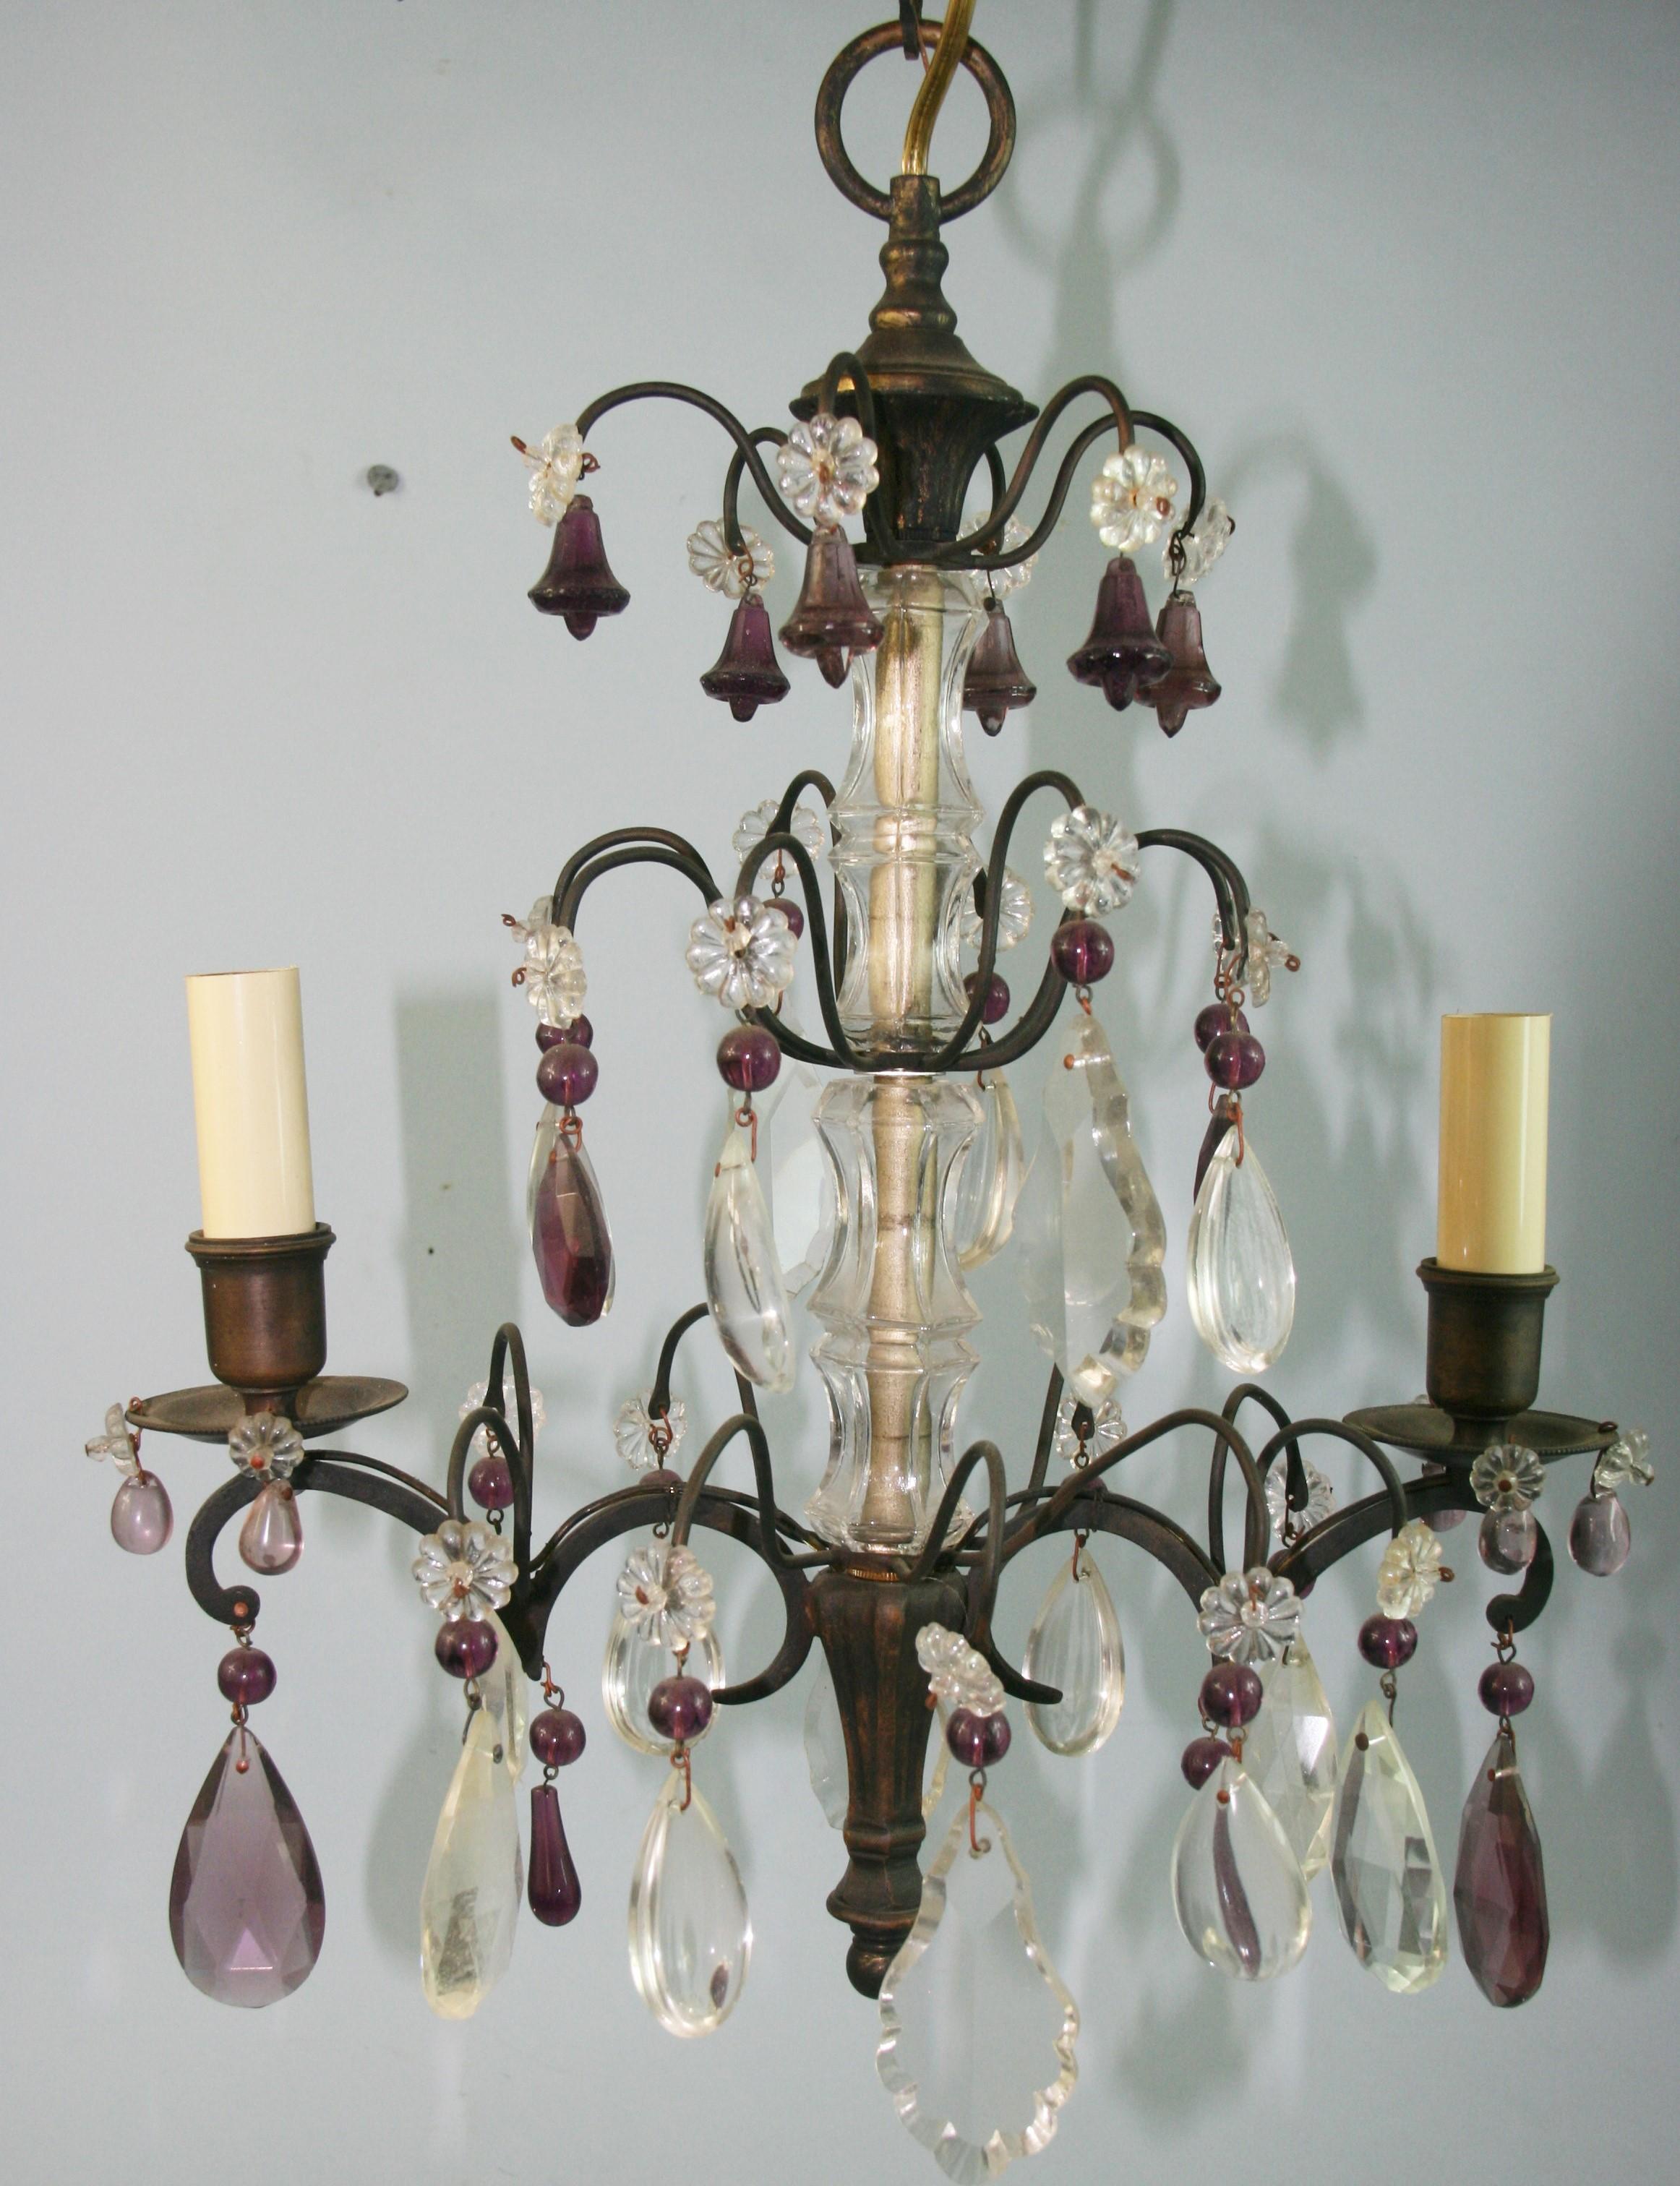 1620  Lustre français à deux lumières décoré de cloches d'améthyste et de cristaux clairs.
Accepte 2 ampoules de 60 watts de type candélabre.
 
 